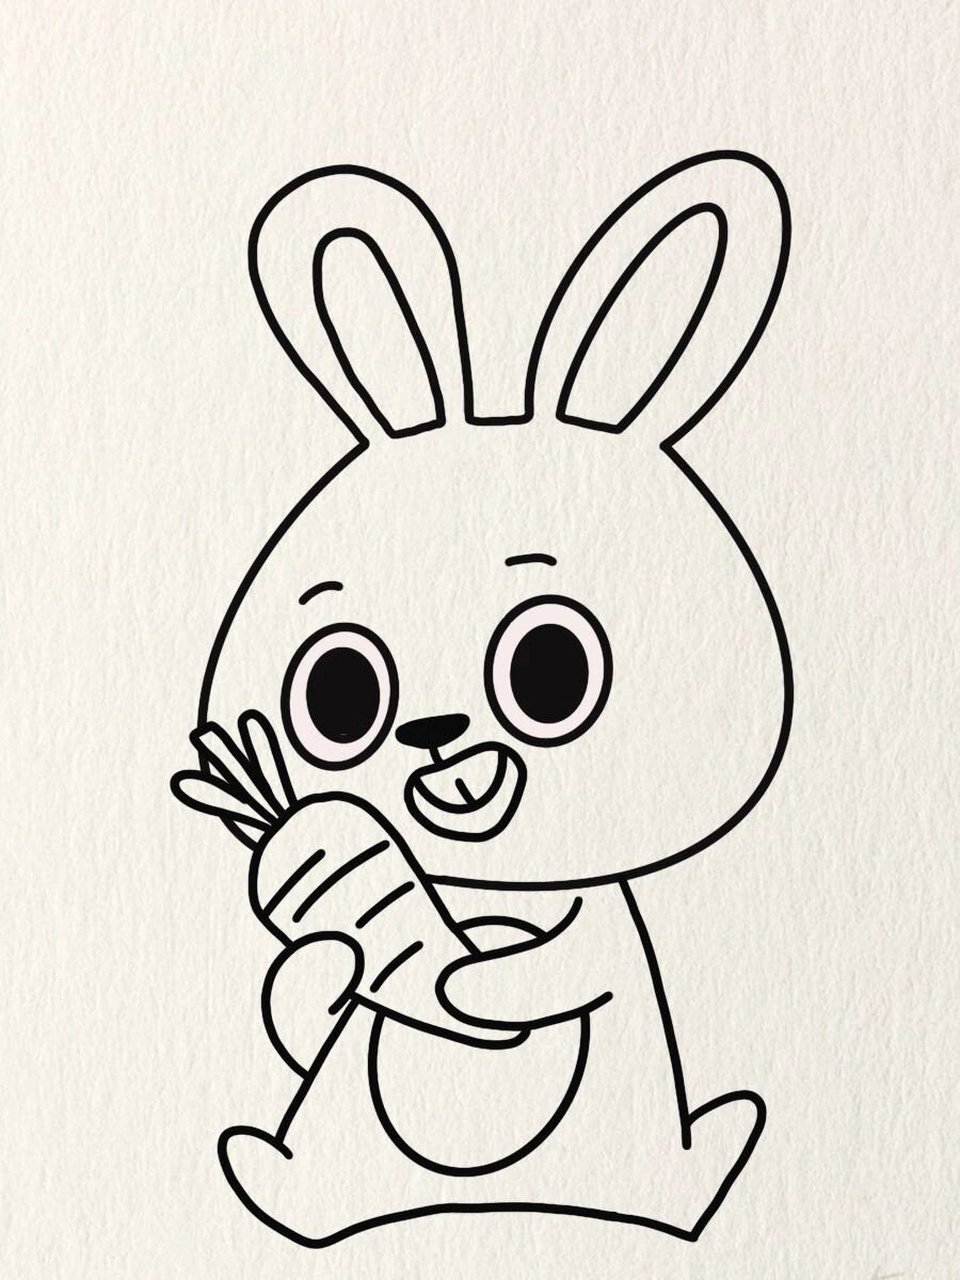 兔子抱着萝卜的简笔画图片